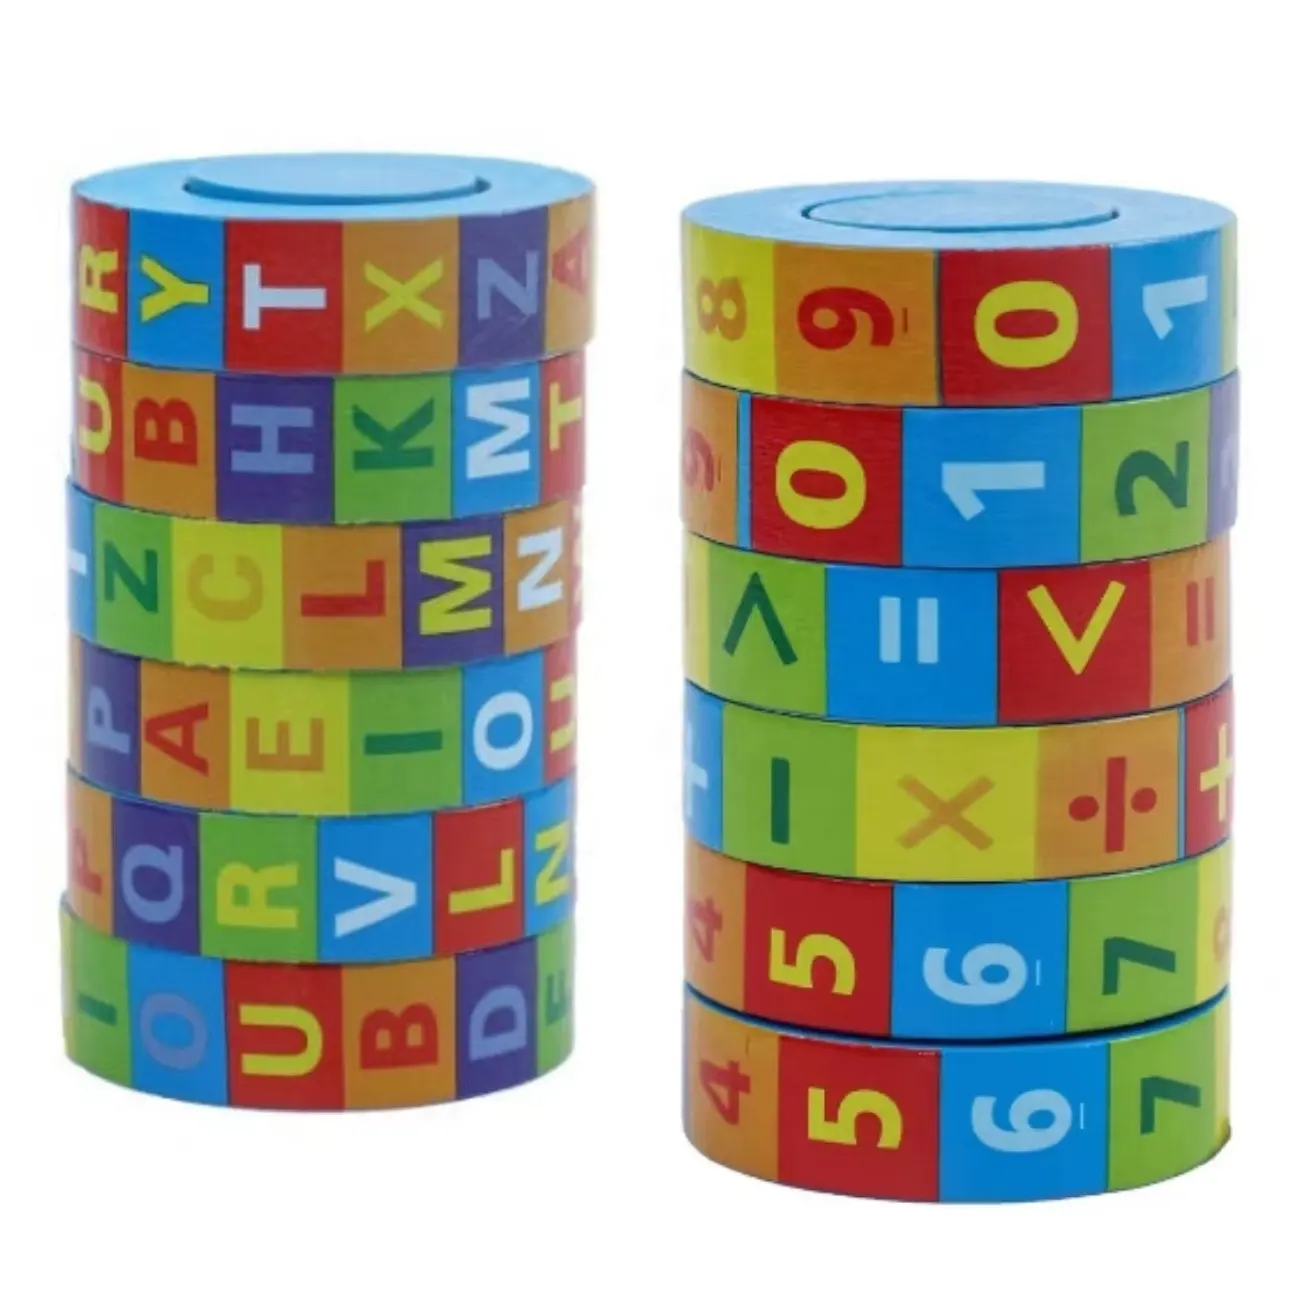 Sıcak satış ahşap çocuk eğitim eğitici oyuncaklar yüksek kaliteli matematik küp alfabe numarası iplik bulmaca çocuk eğitim oyuncak